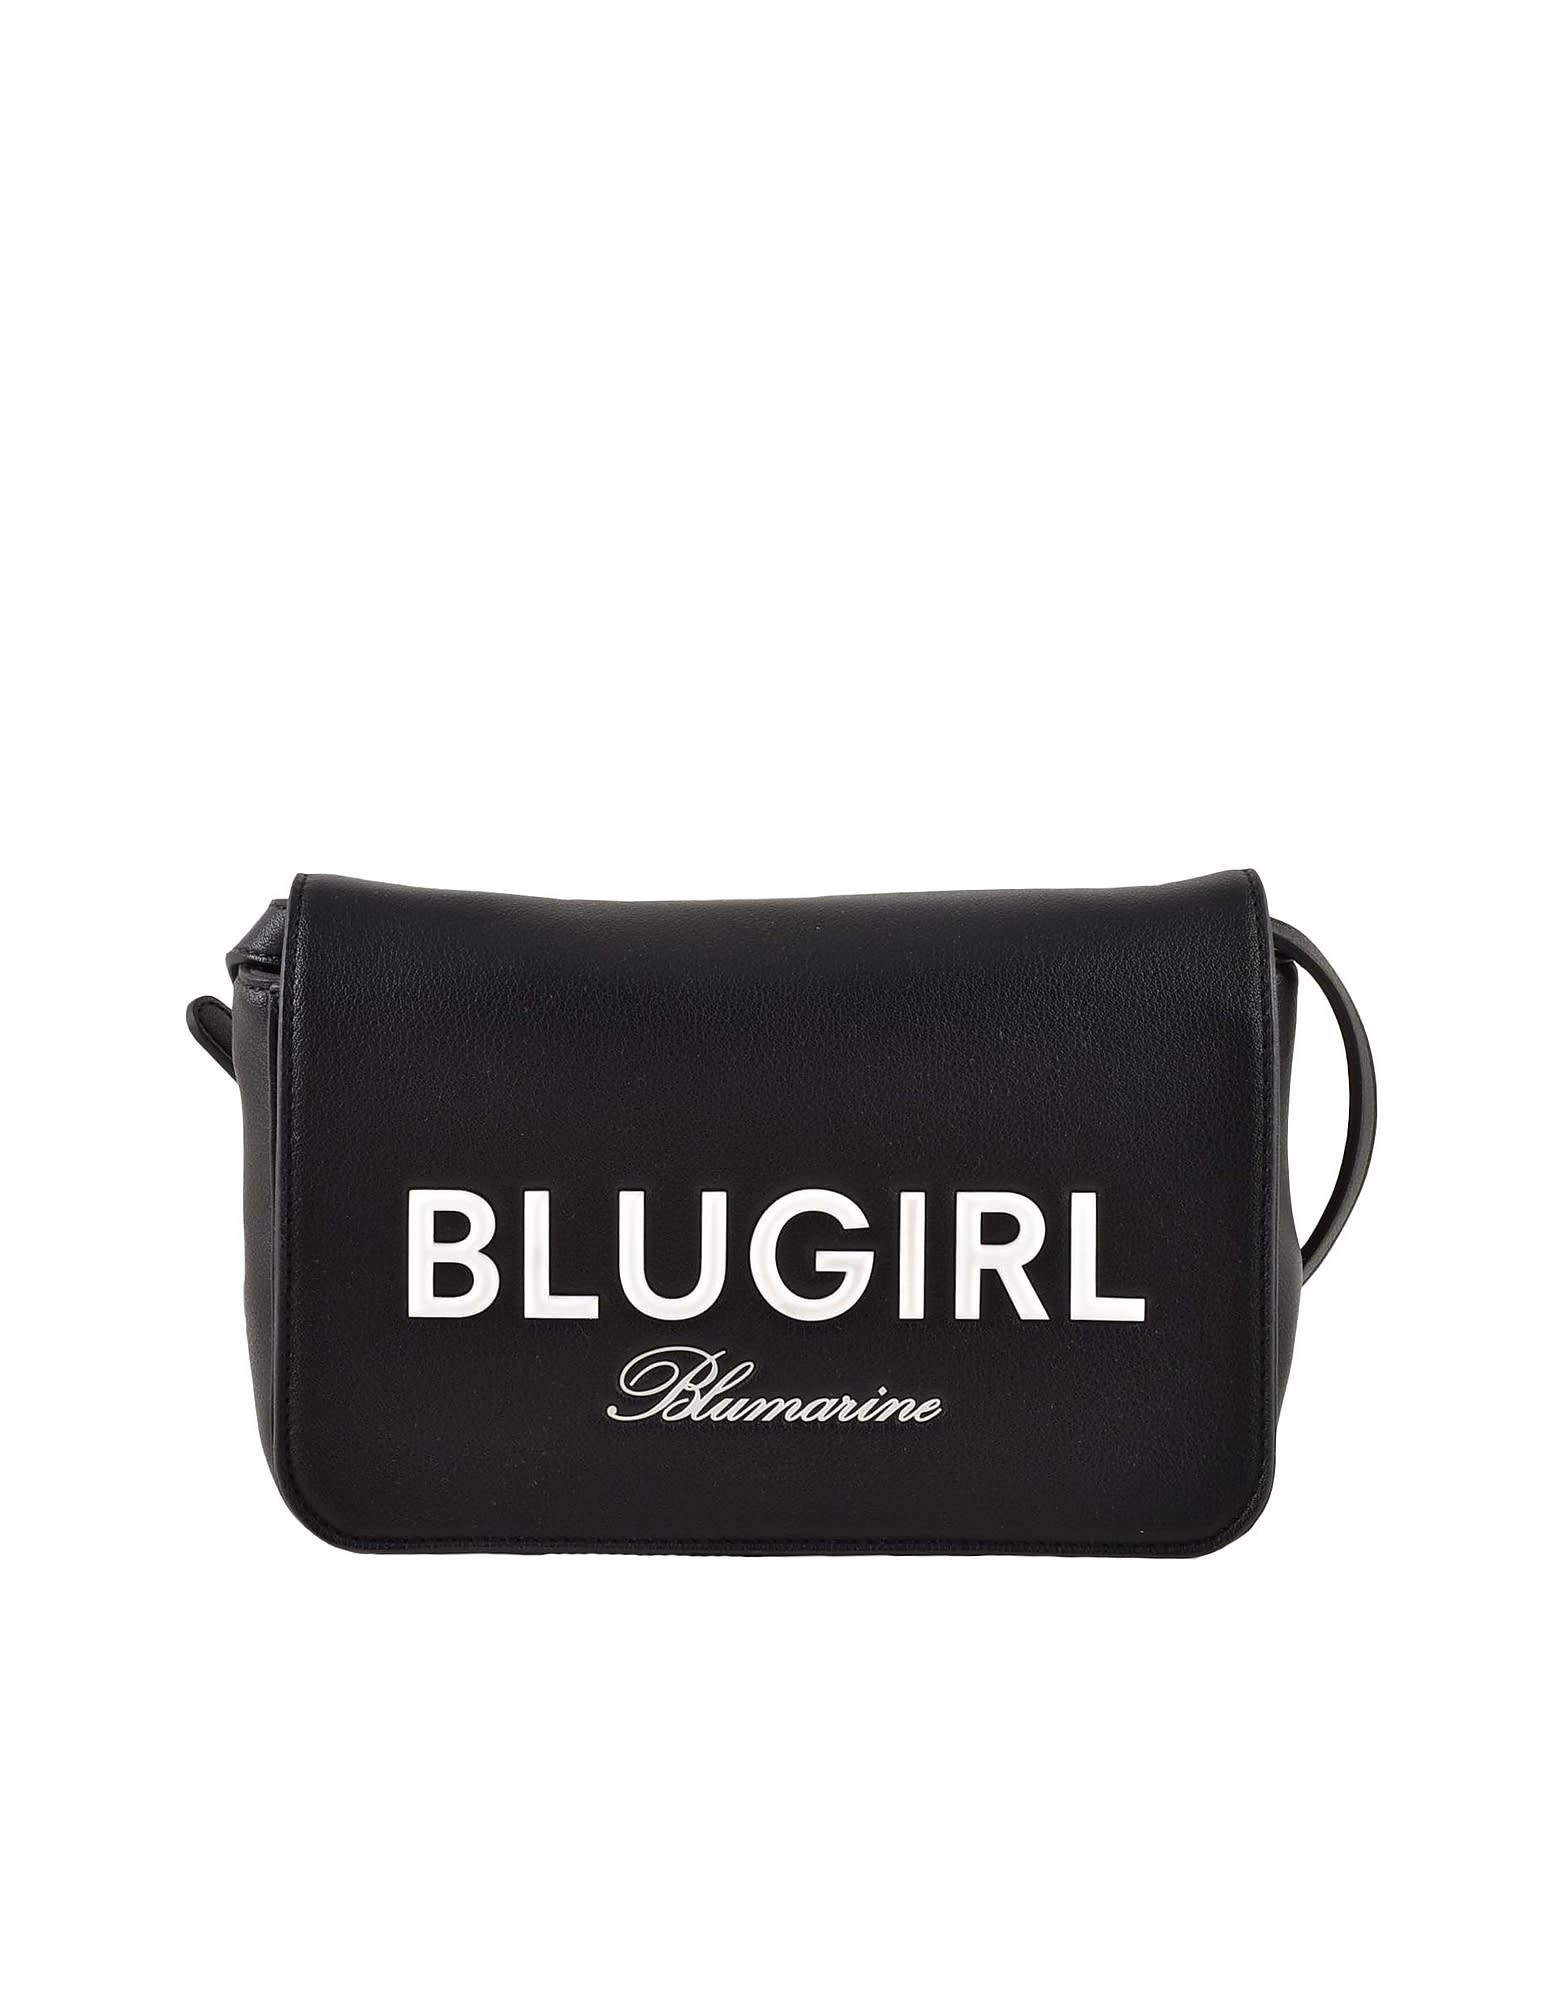 Blugirl Womens Black Handbag